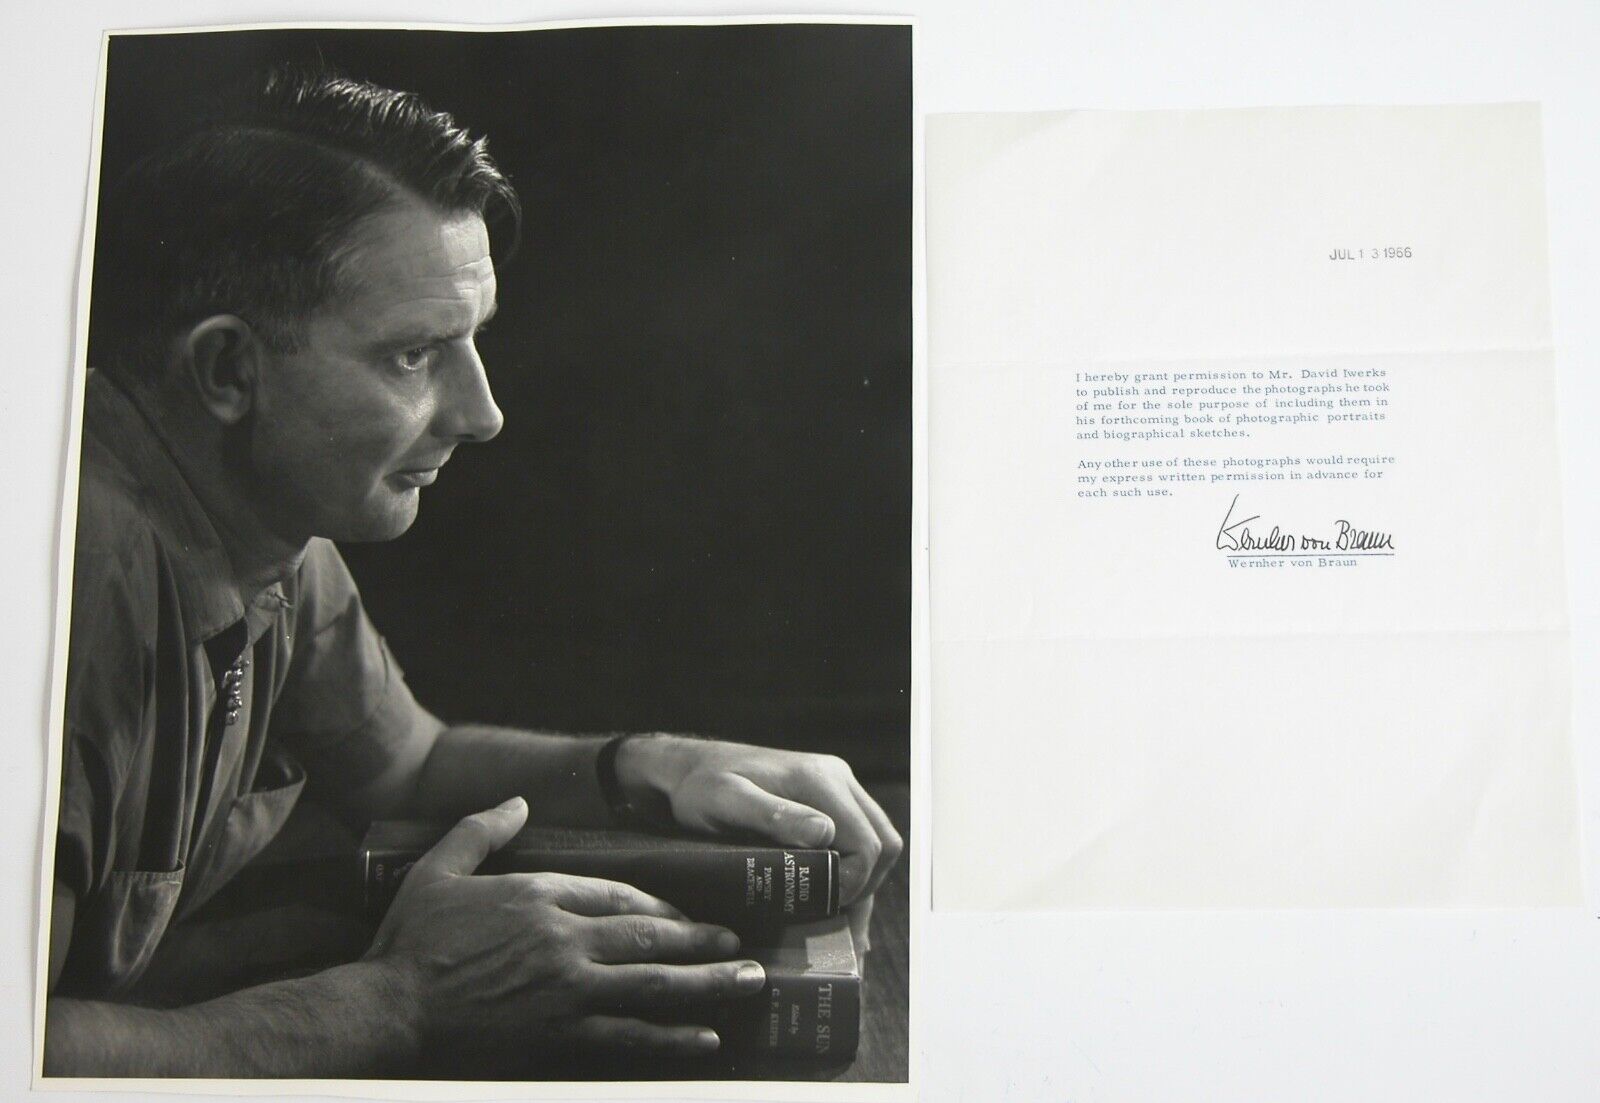 WERNHER VON BRAUN Signed Letter 1966 Portrait 11X14 Photograph by Dave Iwerks